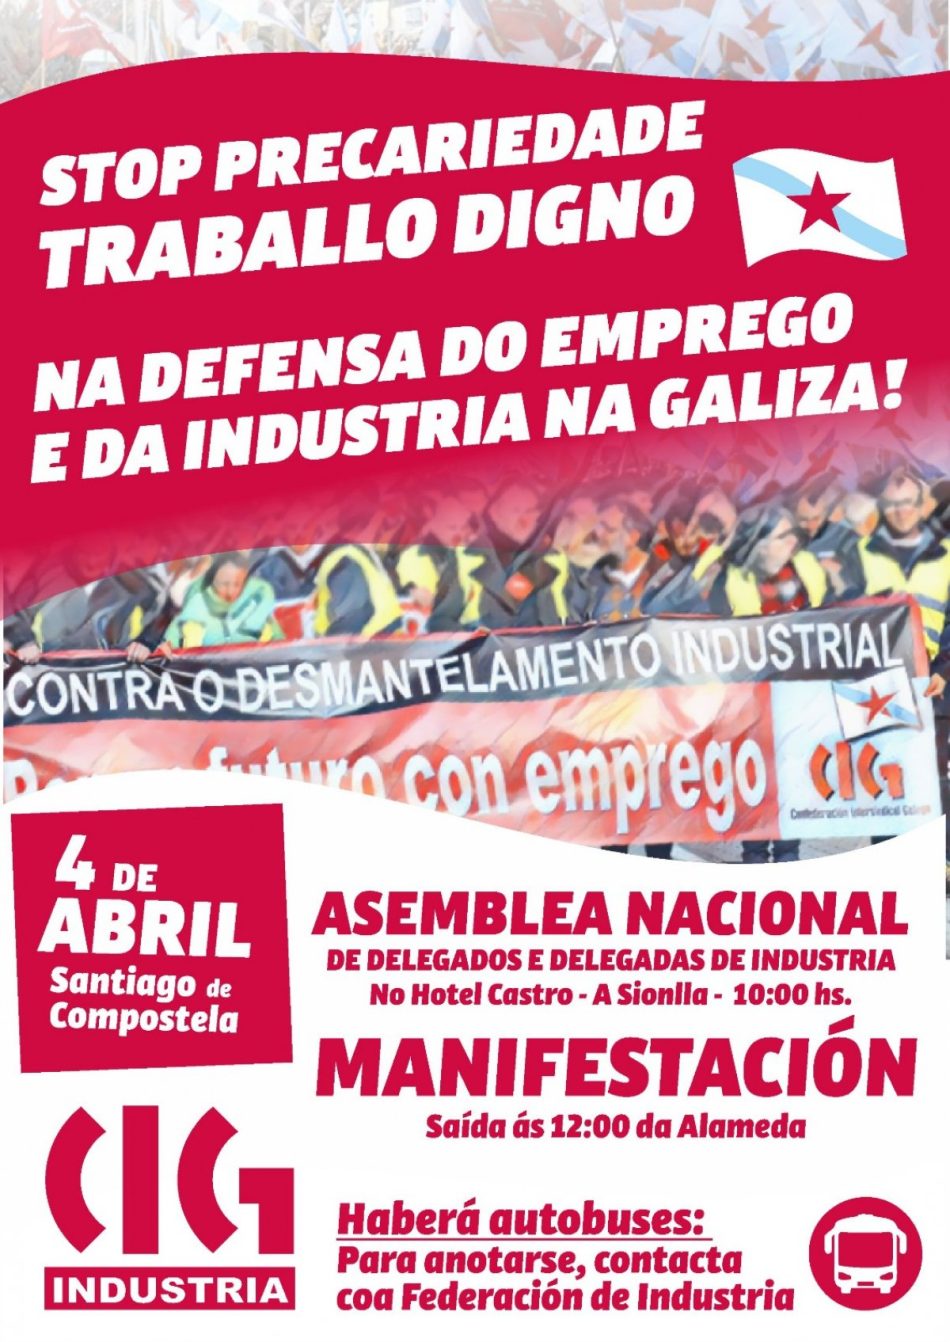 CIG-Industria mobilizarase o xoves 4 de abril en defensa do emprego e da Industria en Galiza